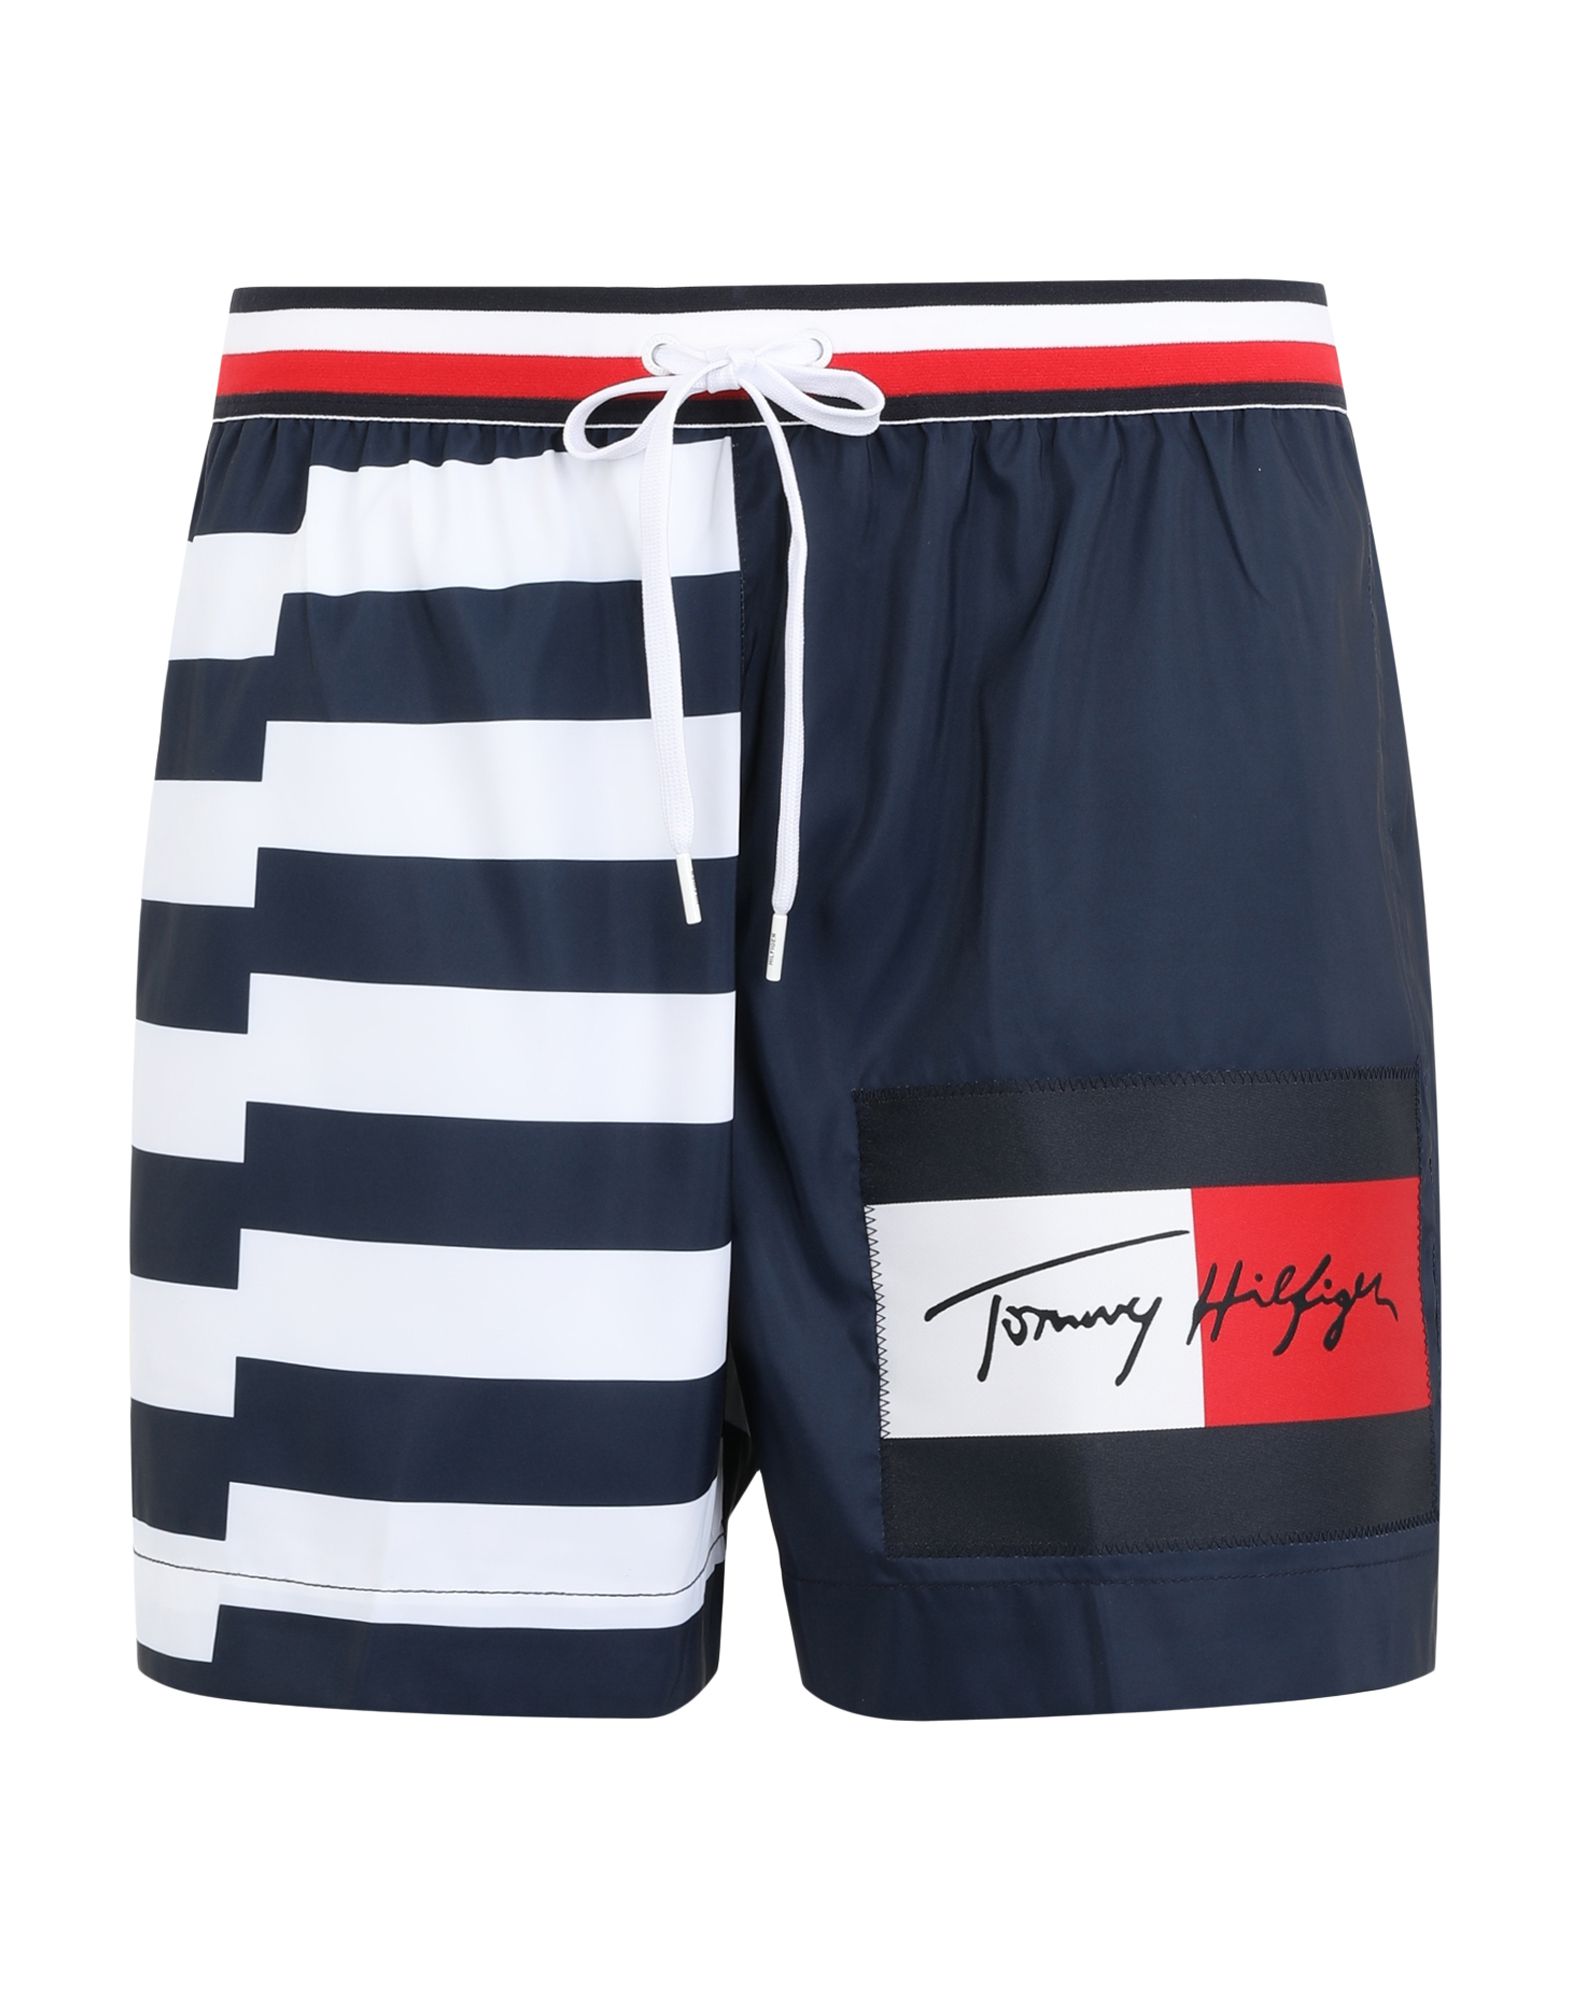 Шорты tommy. Шорты Томми Хилфигер. Шорты Томми Хилфигер мужские. Пляжные шорты Томми Хилфигер. Плавательные шорты Томми Хилфигер.